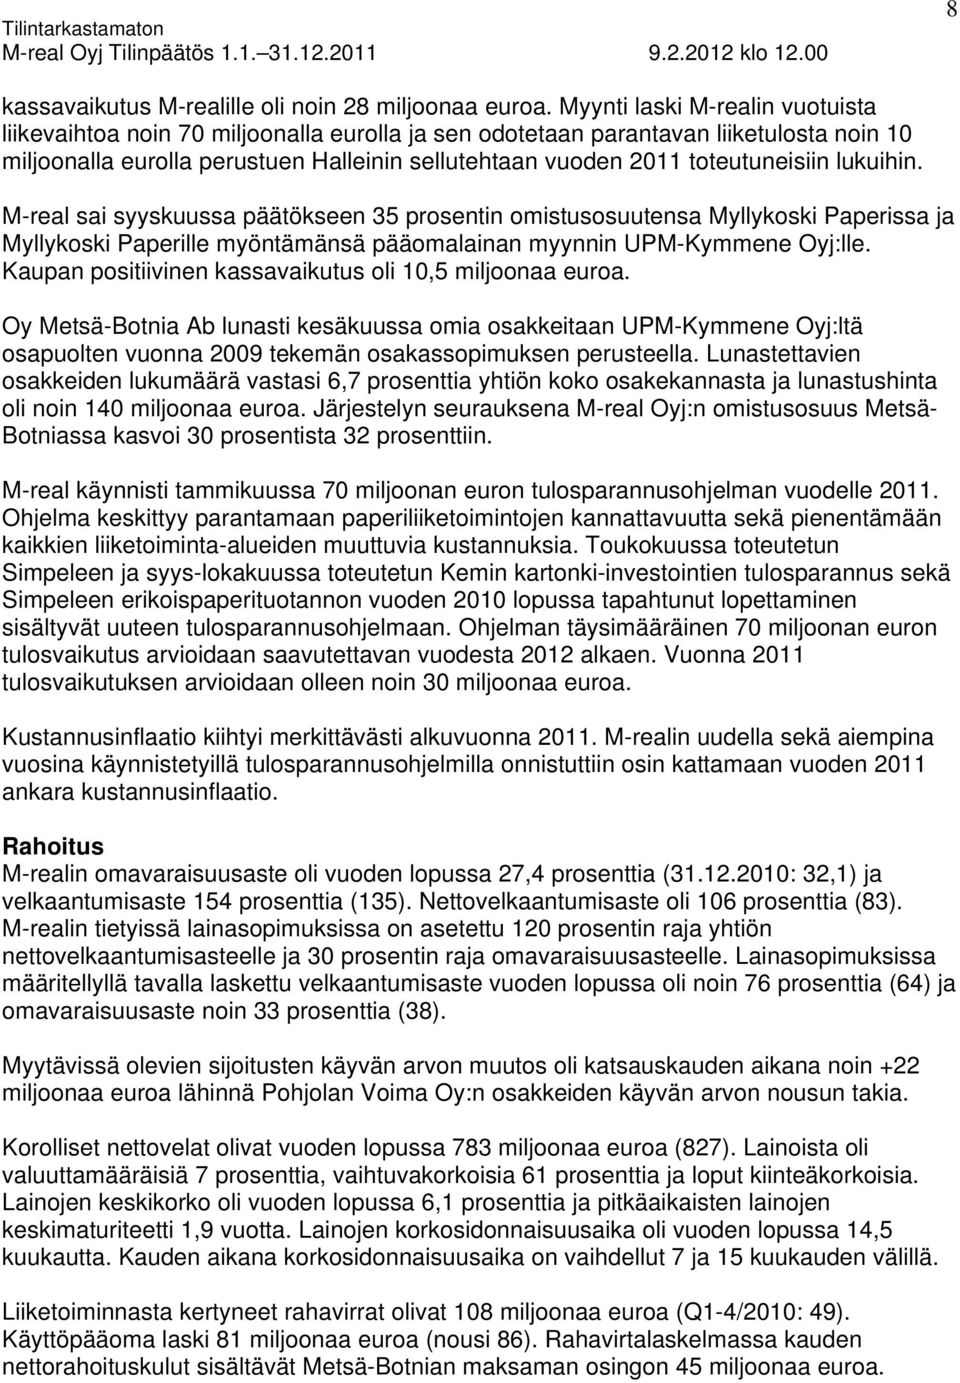 toteutuneisiin lukuihin. M-real sai syyskuussa päätökseen 35 prosentin omistusosuutensa Myllykoski Paperissa ja Myllykoski Paperille myöntämänsä pääomalainan myynnin UPM-Kymmene Oyj:lle.